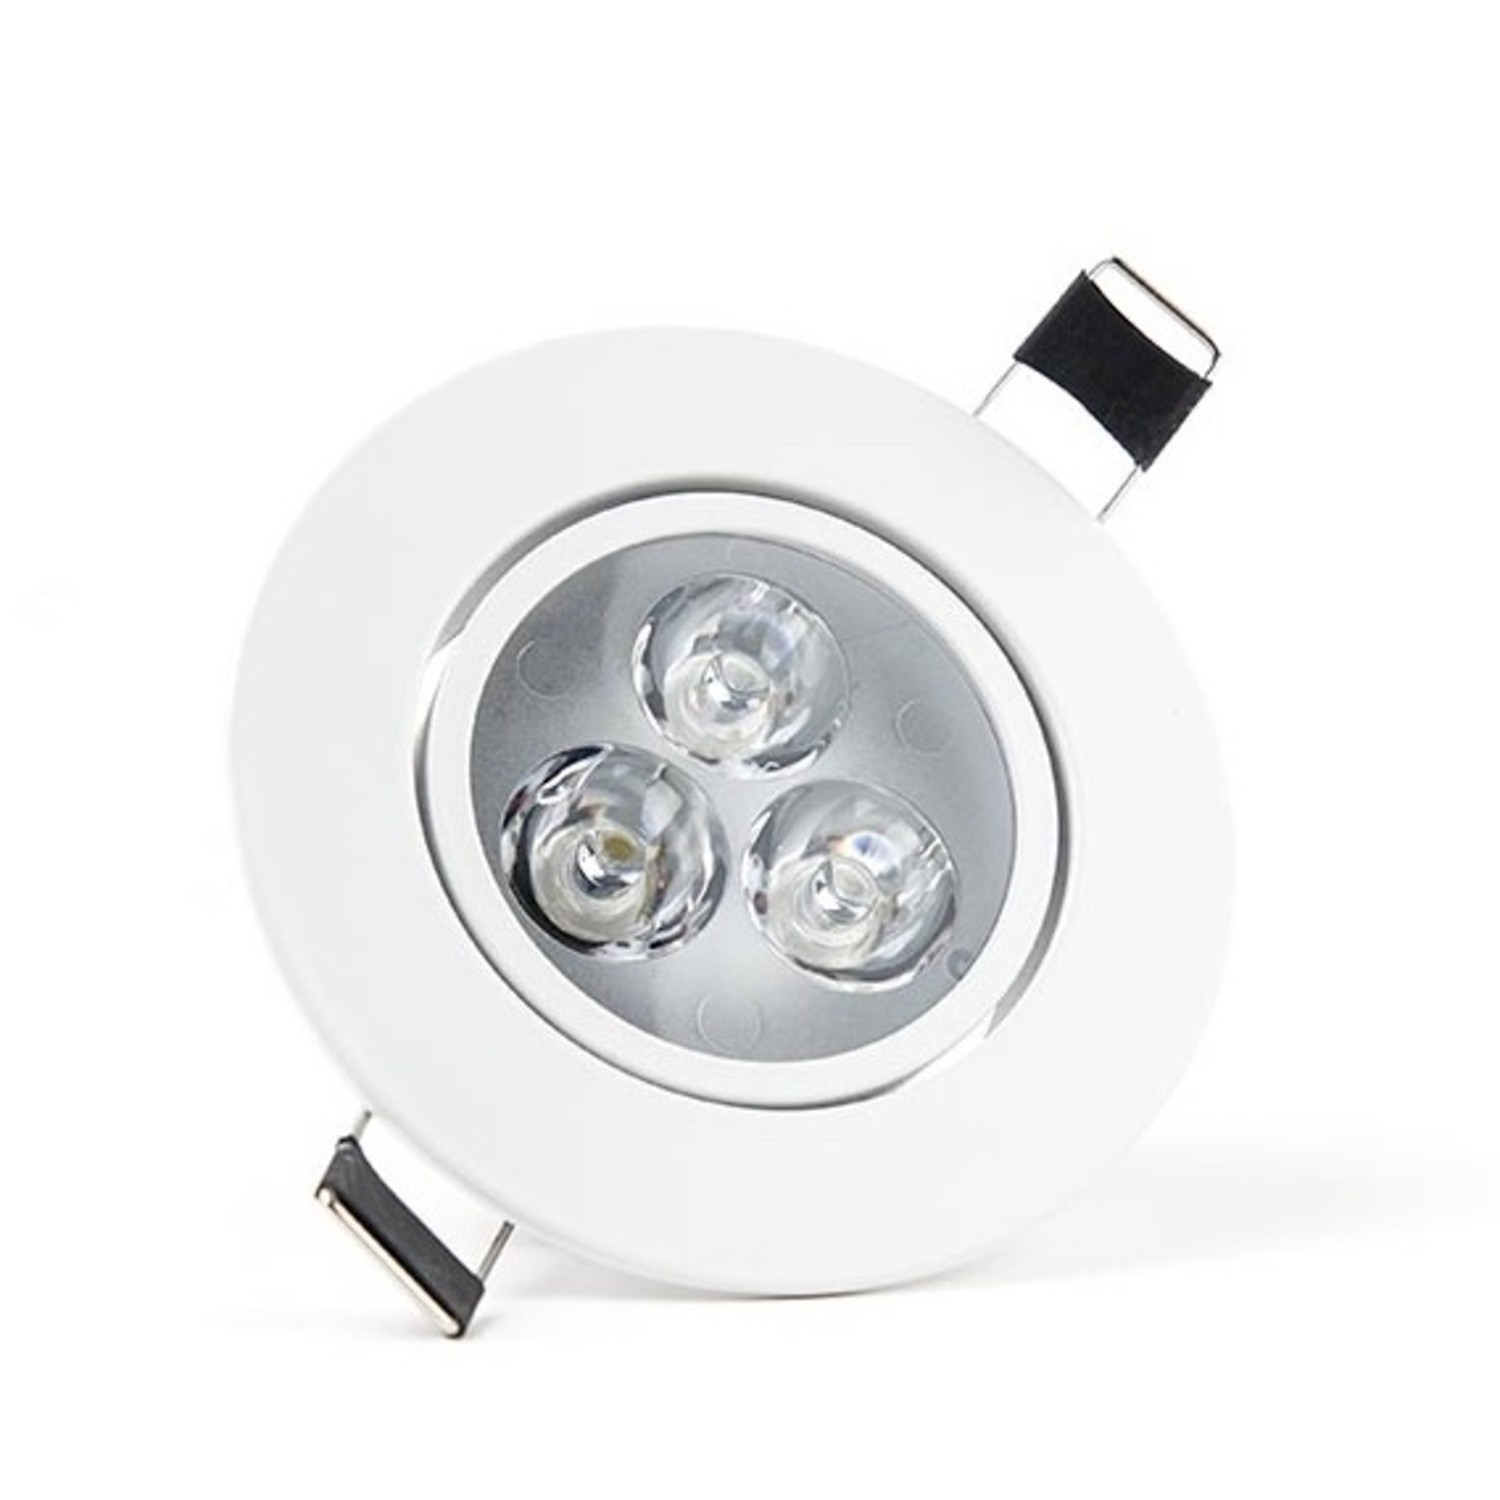 Afhankelijk spion Onderwijs LED inbouwspot Dimbaar - 3W vervangt 25W - 2700K warm wit licht - Kant -  Ledlichtdiscounter.nl